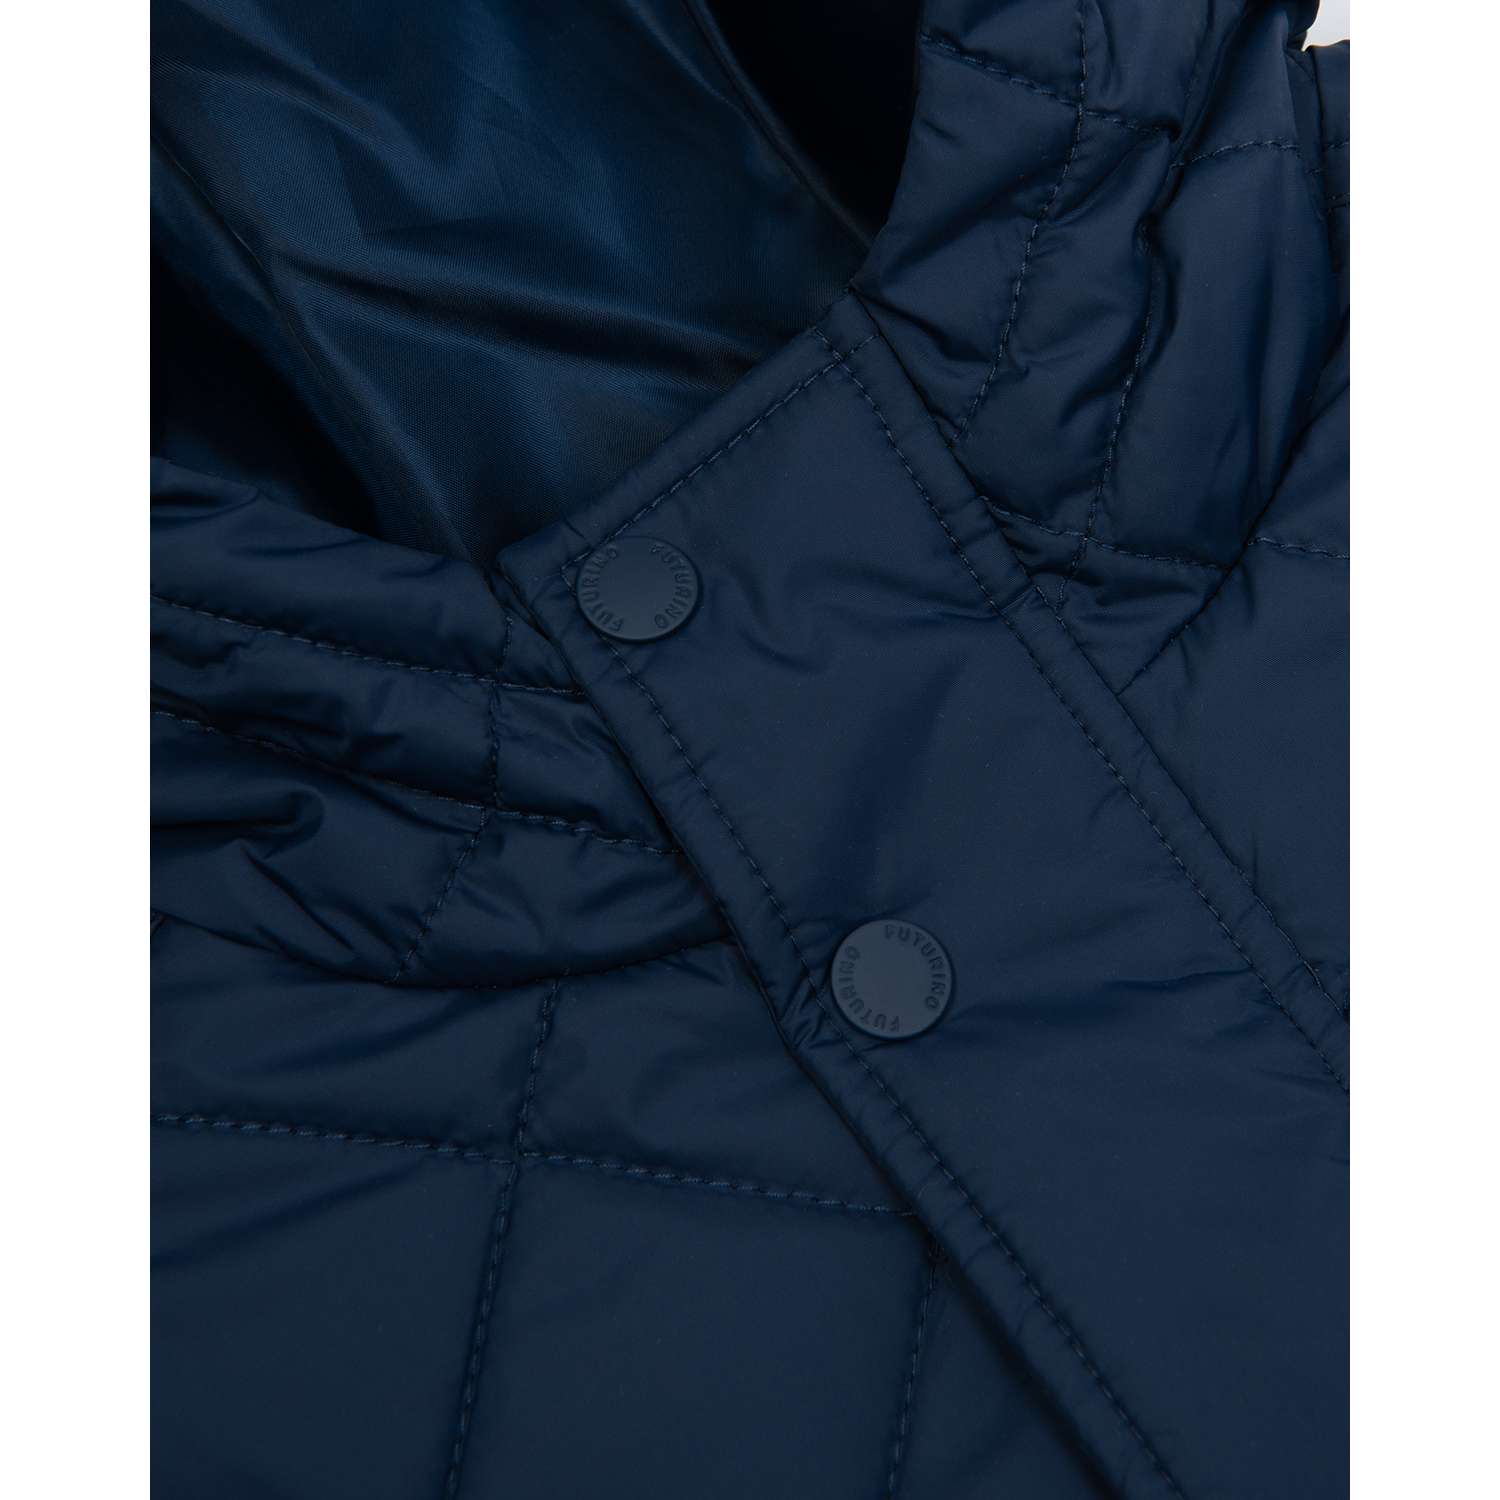 Куртка Futurino S23FU5-B507kb-D6 - фото 5